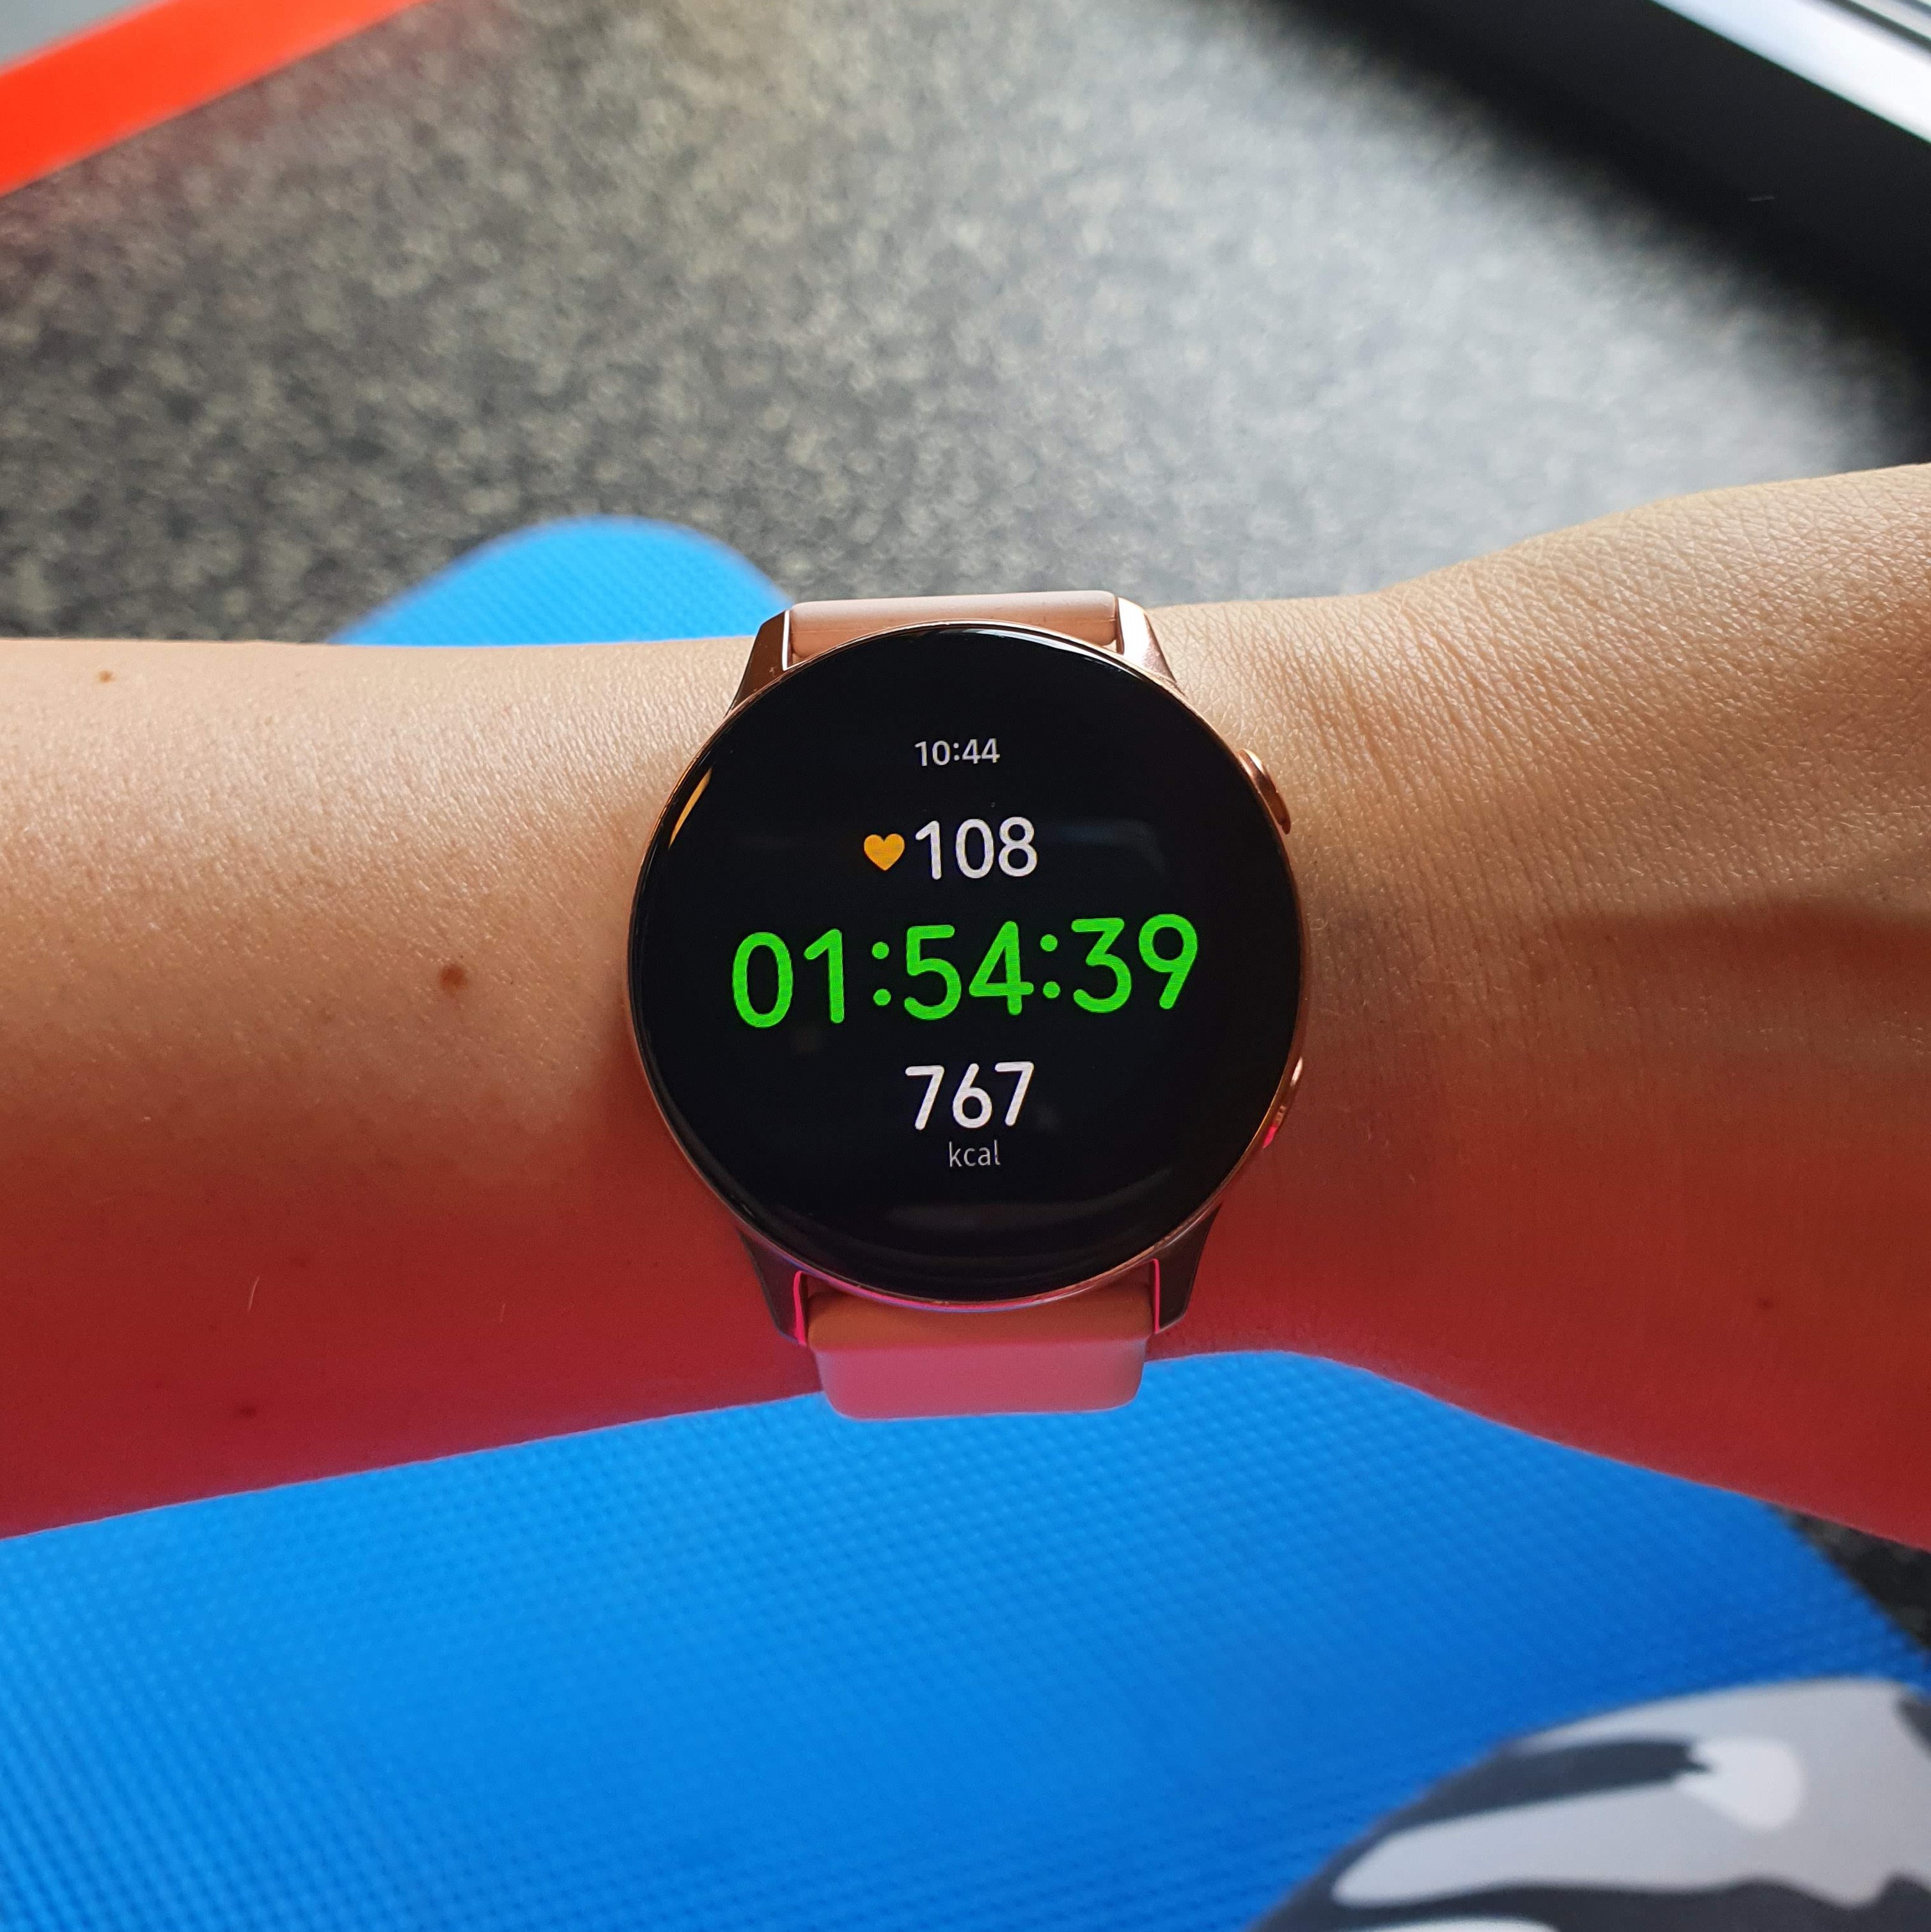 Fotka mých chytrých hodinek na konci mého tréninku v posilovně. Ukazují čas 1:54:39 a 767 spálených kcal.